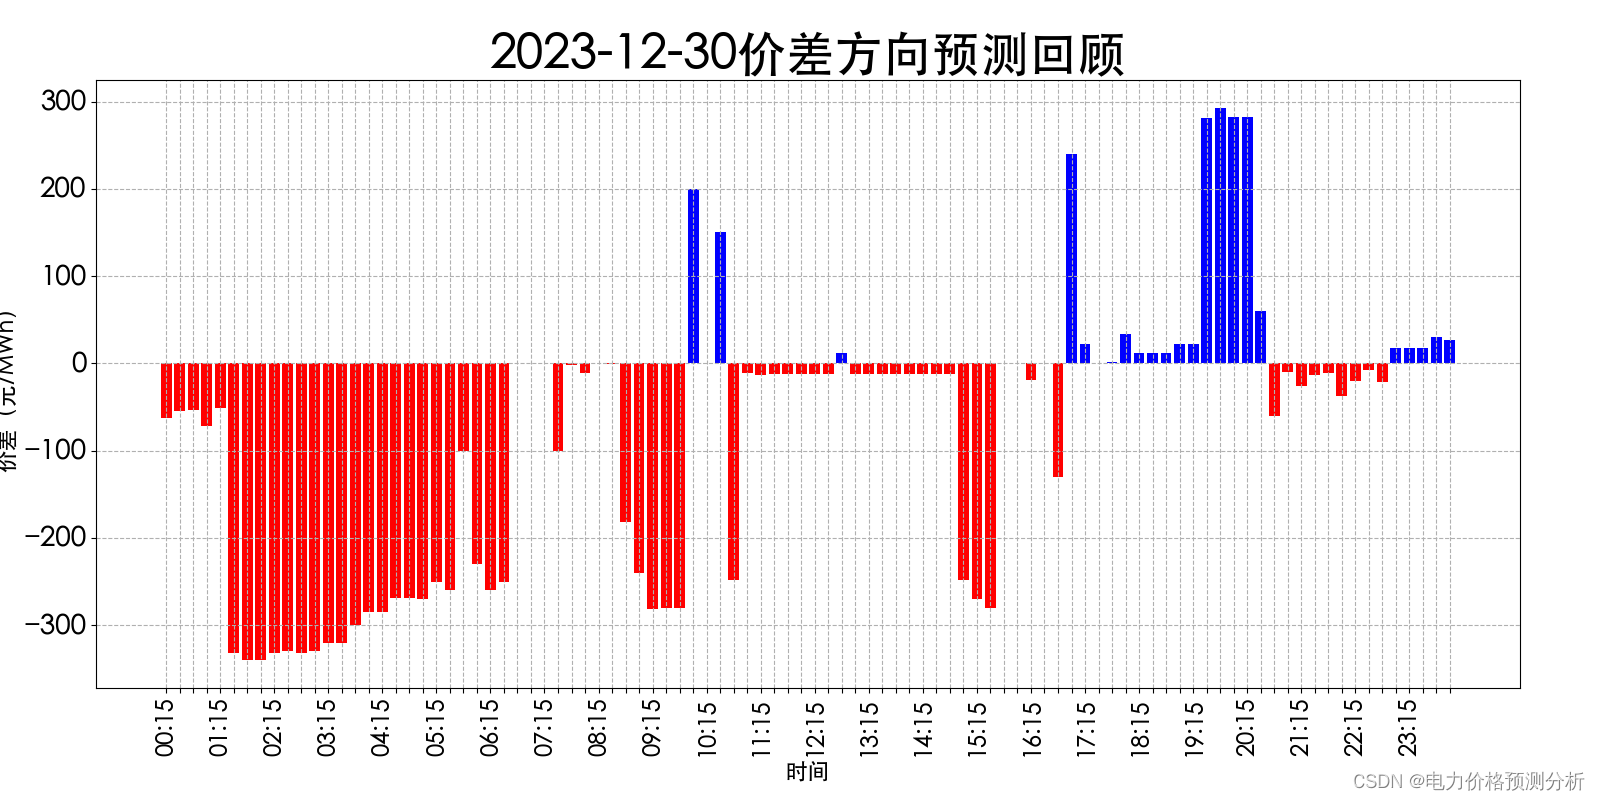 山西电力市场日前价格预测【2024-01-01】